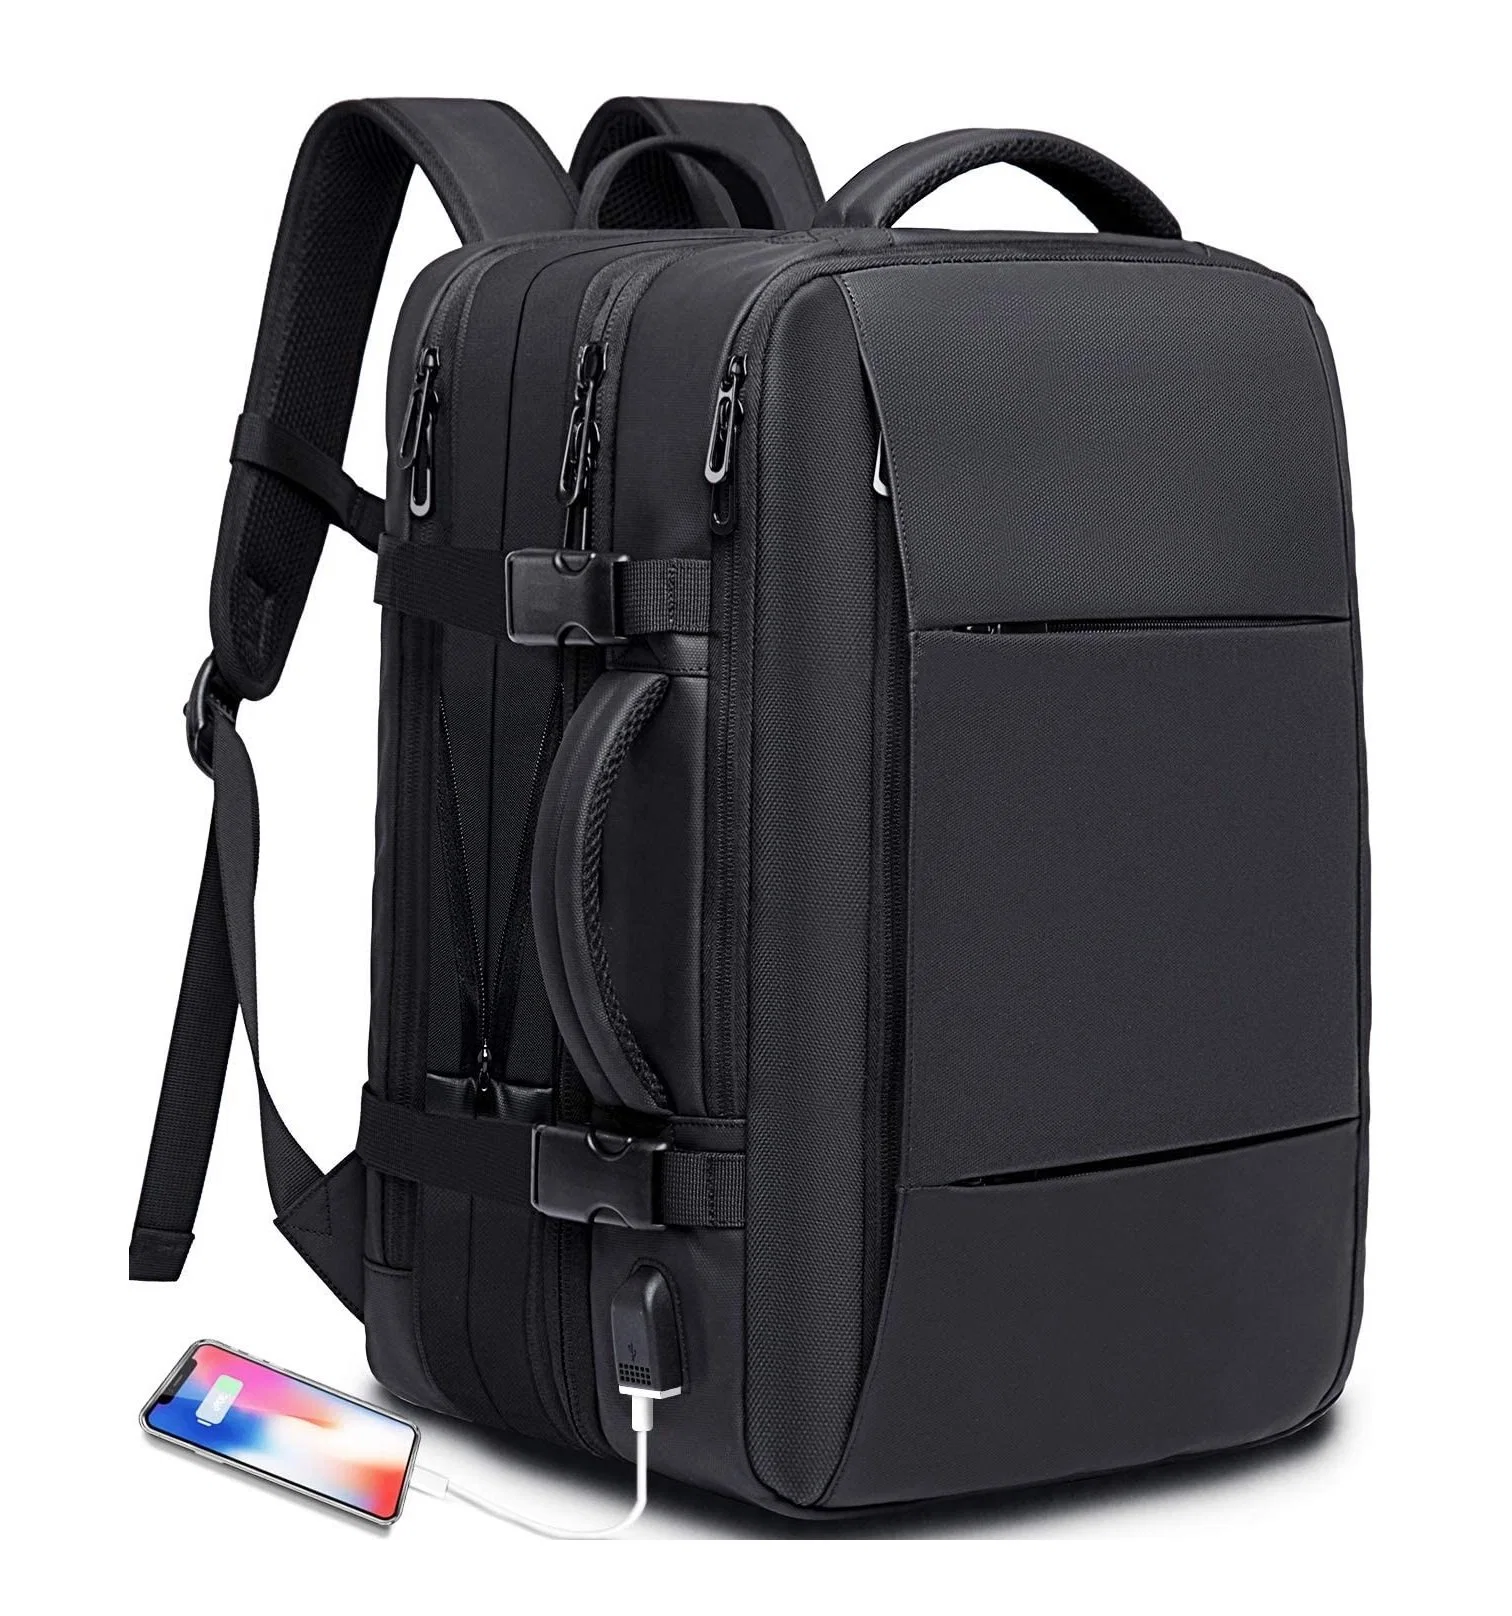 Reise Rucksack Flug genehmigt Handgepäck Rucksack für internationale Reisen Tasche Wasserabweisende Laptop-Rucksäcke